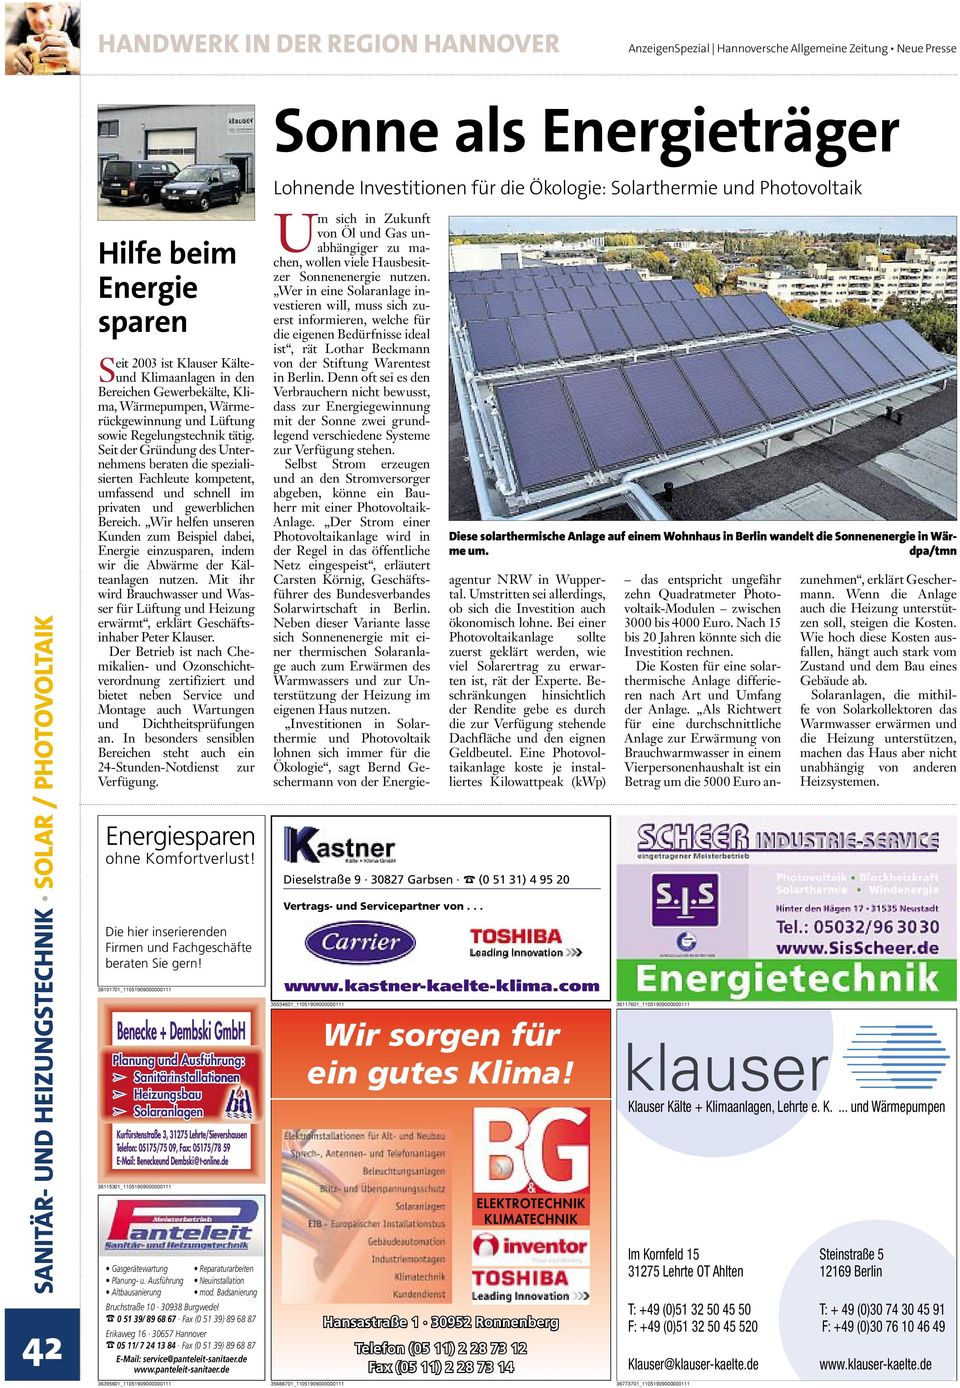 solar/ photovoltaik 42 Hilfebeim Energie sparen Seit 2003 ist Klauser KälteundKlimaanlageninden Bereichen Gewerbekälte,Klima,Wärmepumpen,Wärmerückgewinnung und Lüftung sowie Regelungstechnik tätig.